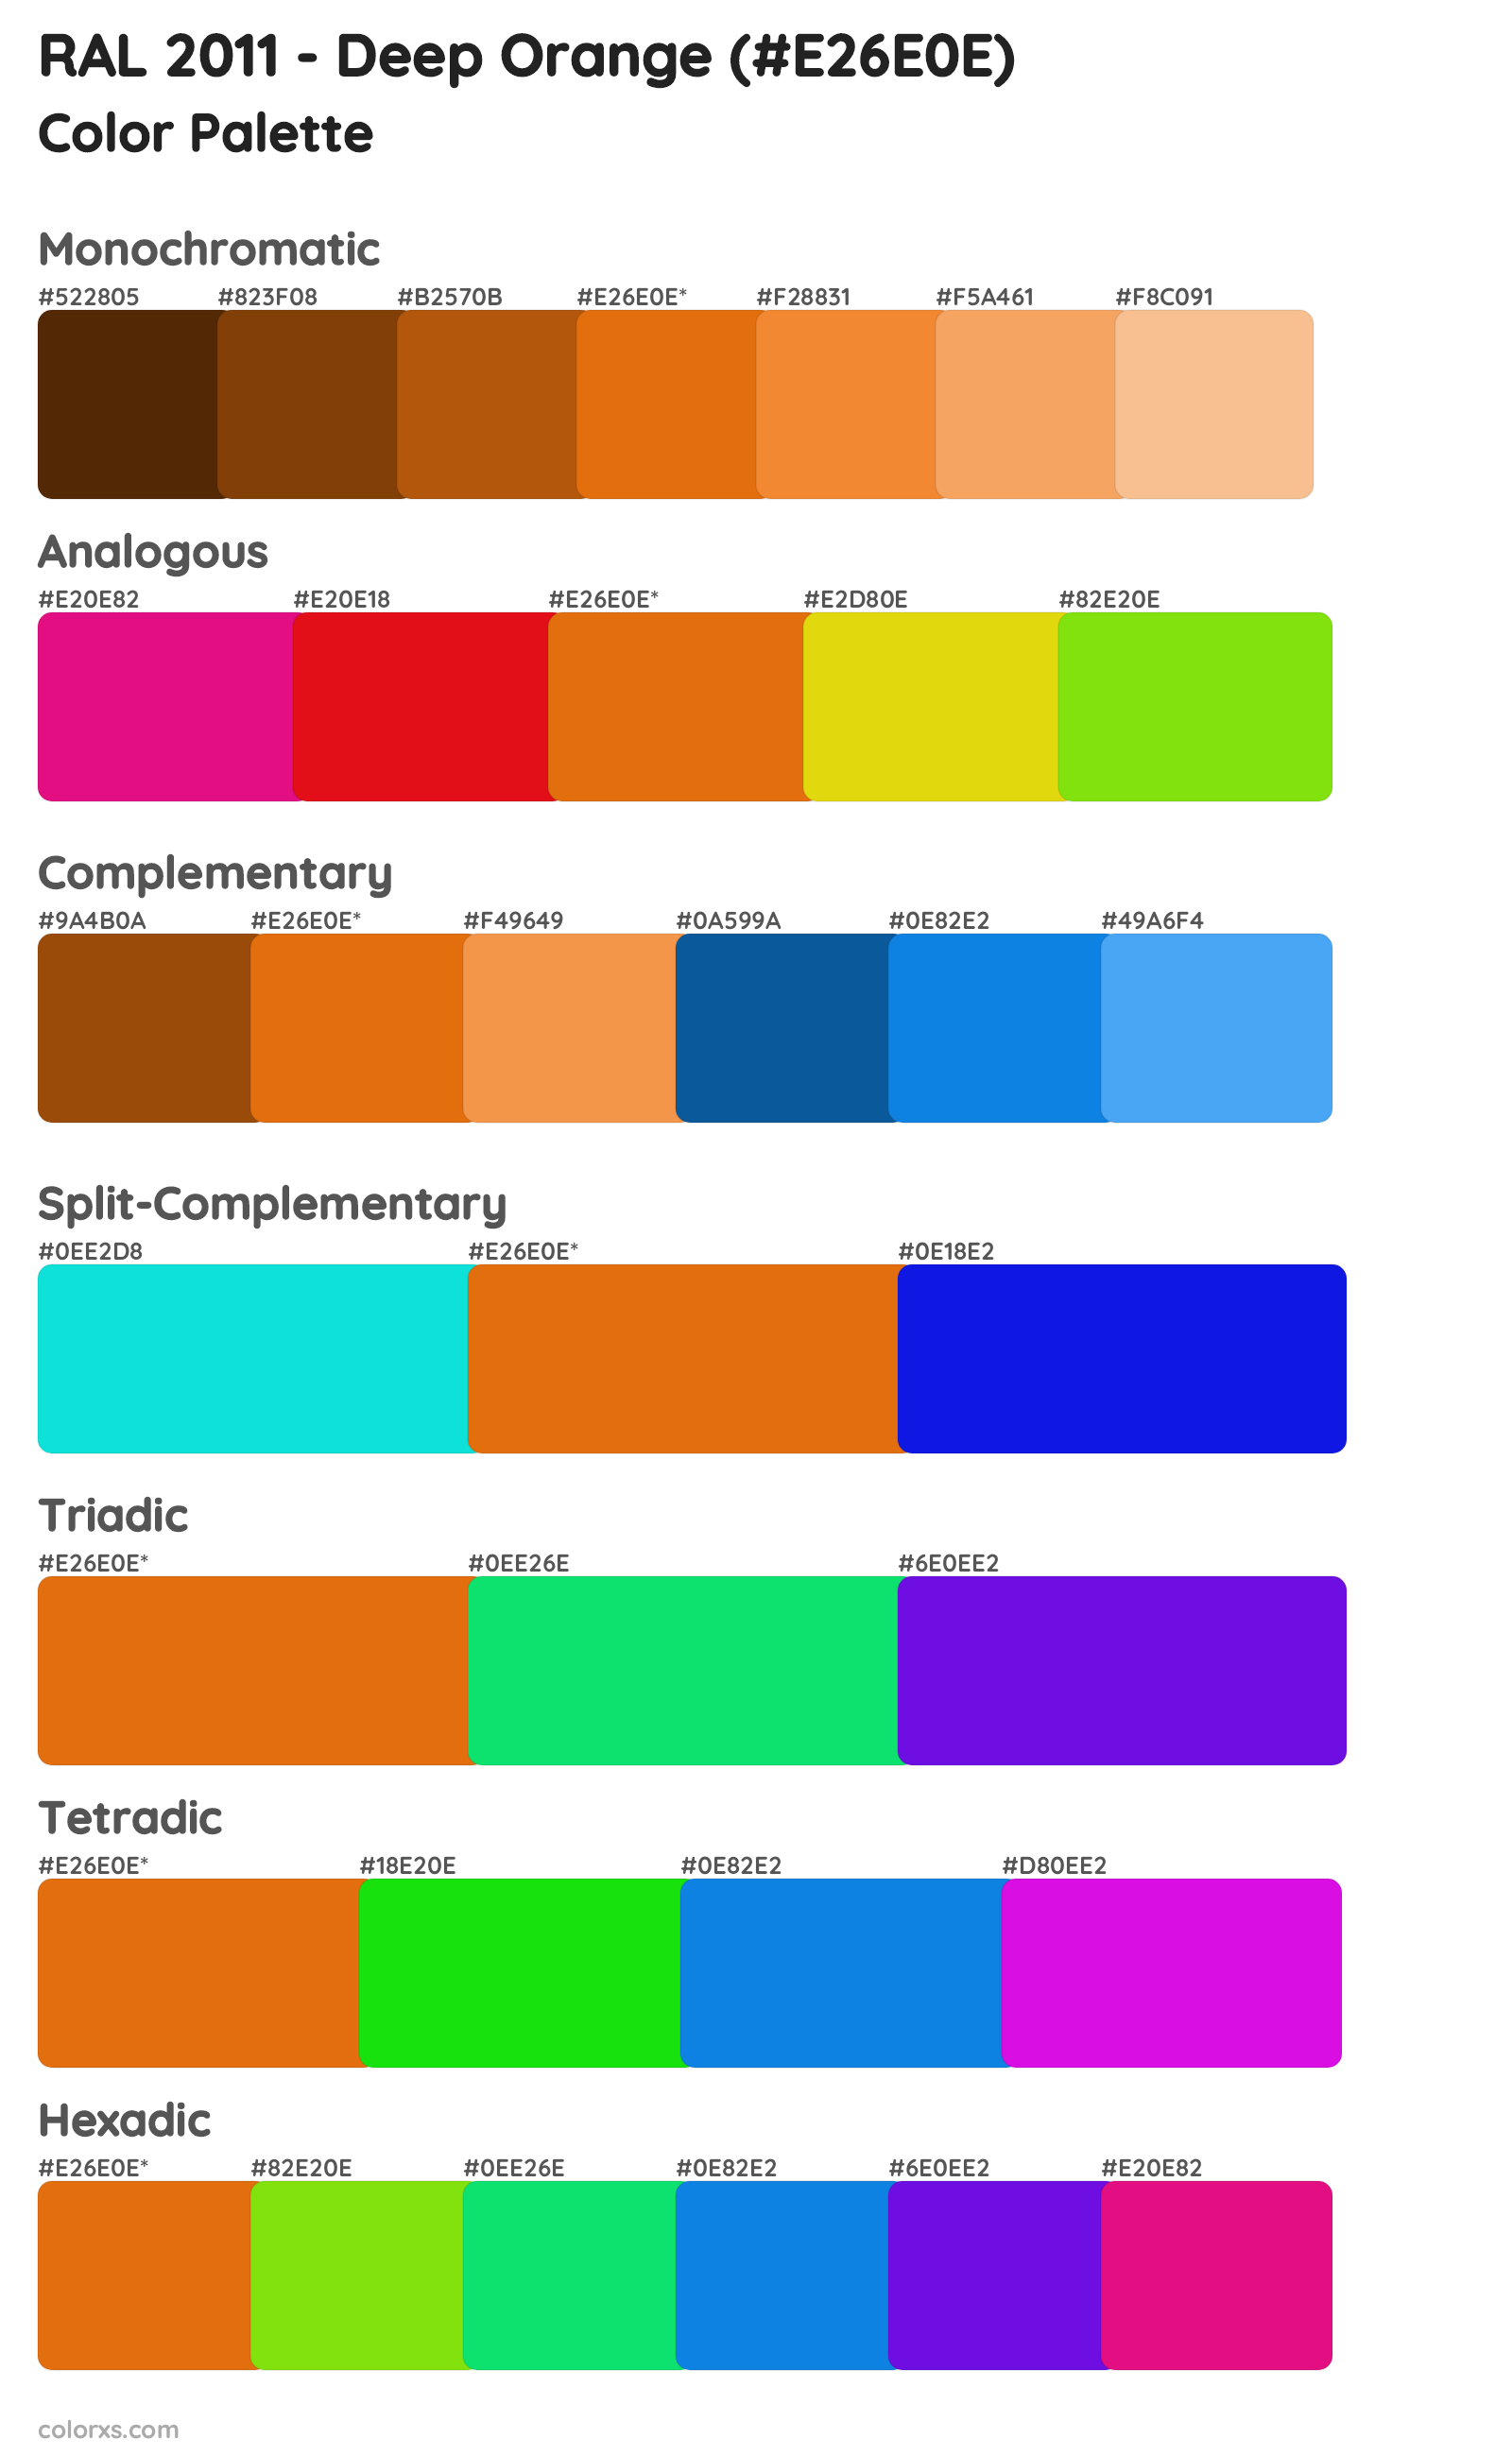 RAL 2011 - Deep Orange Color Scheme Palettes